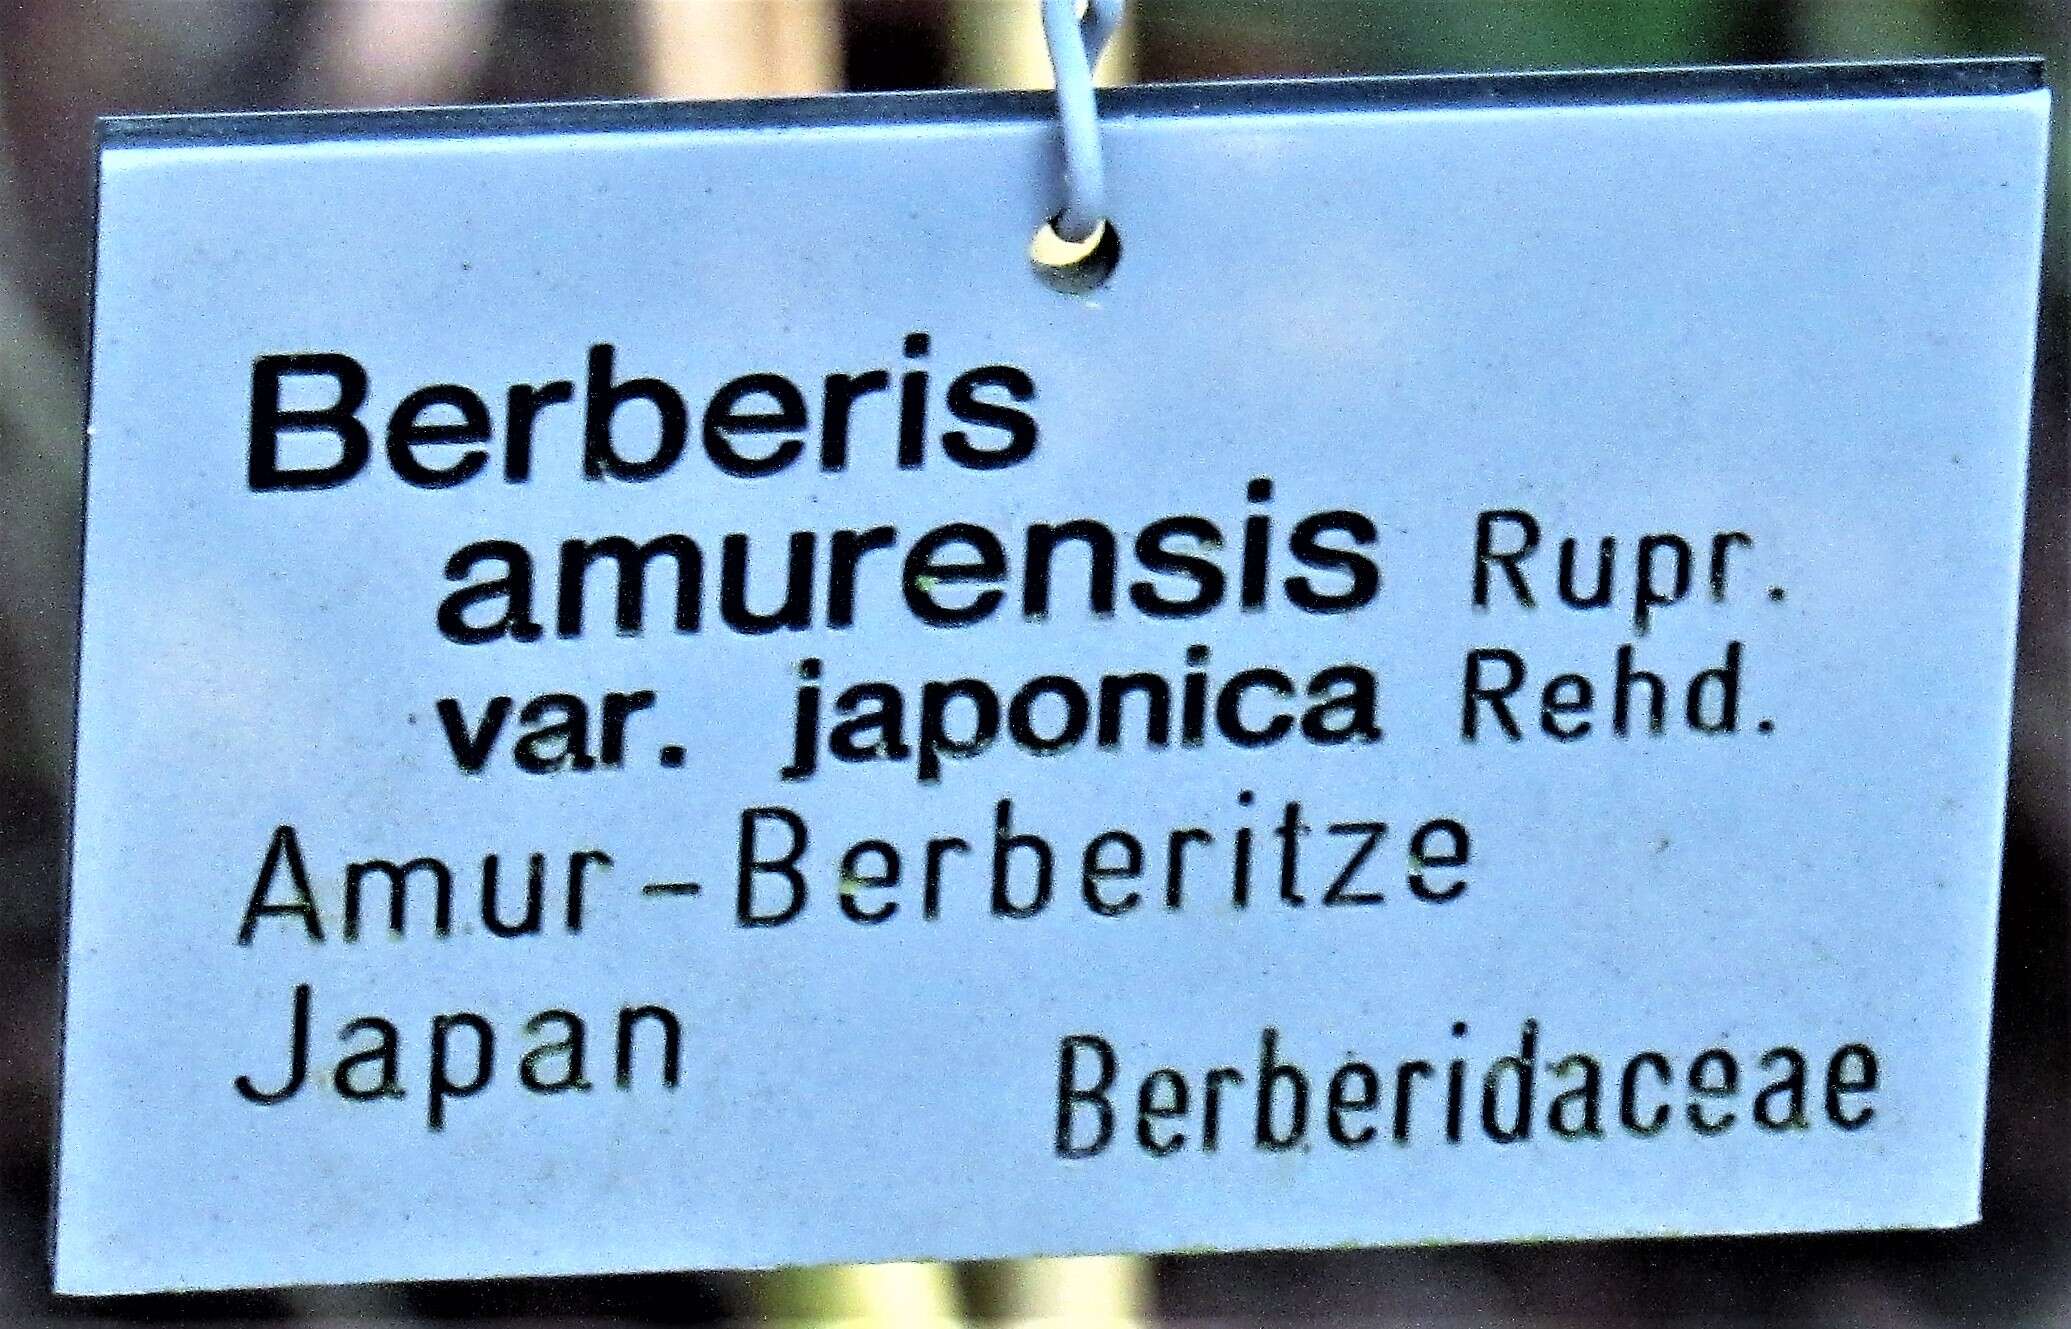 Image of Berberis amurensis Rupr.